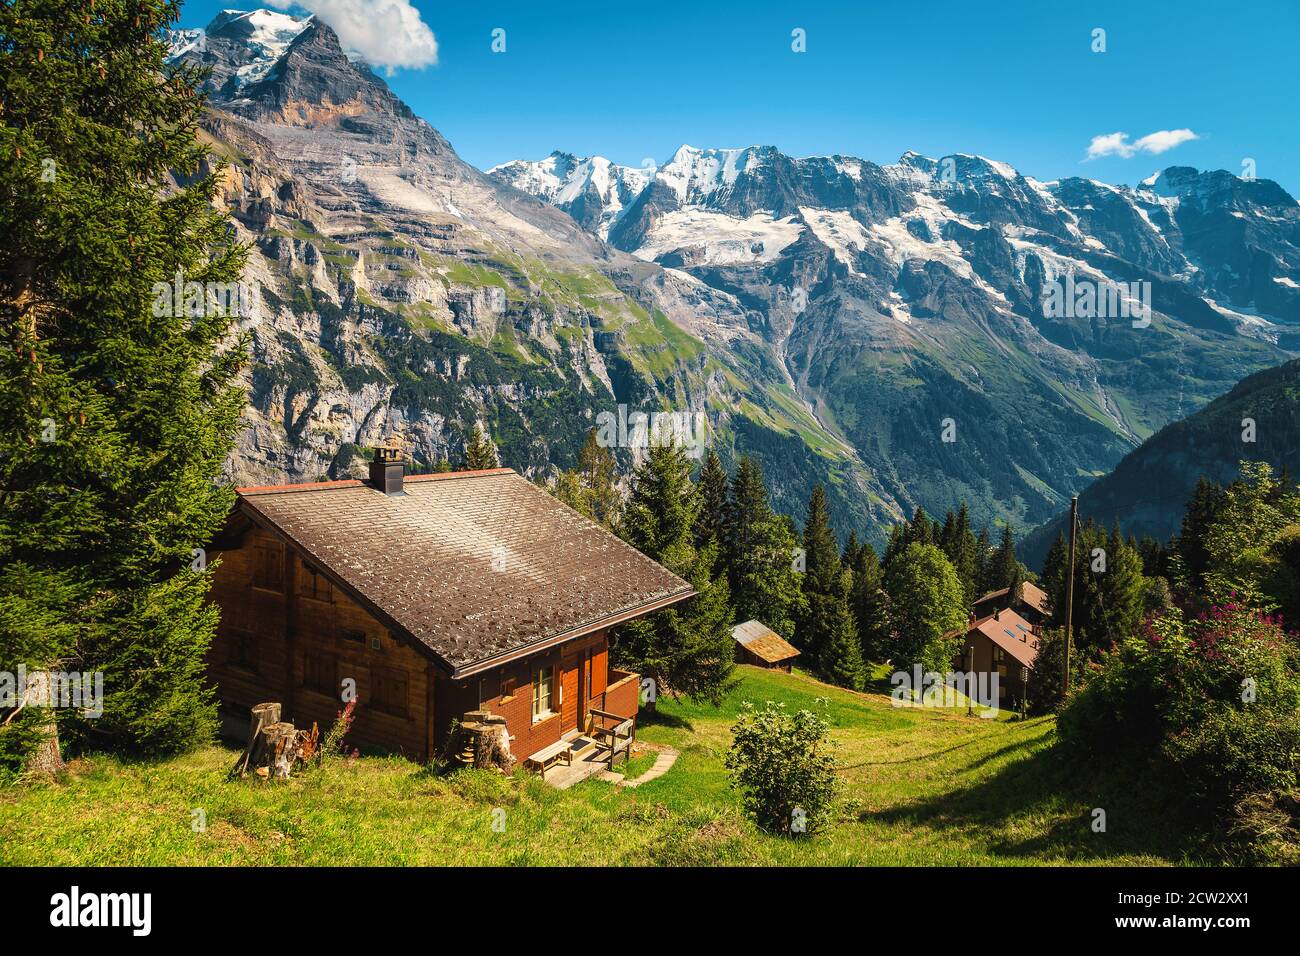 Maisons en bois sur la forêt de glades et hautes montagnes enneigées en arrière-plan, Murren, Oberland bernois, Suisse, Europe Banque D'Images